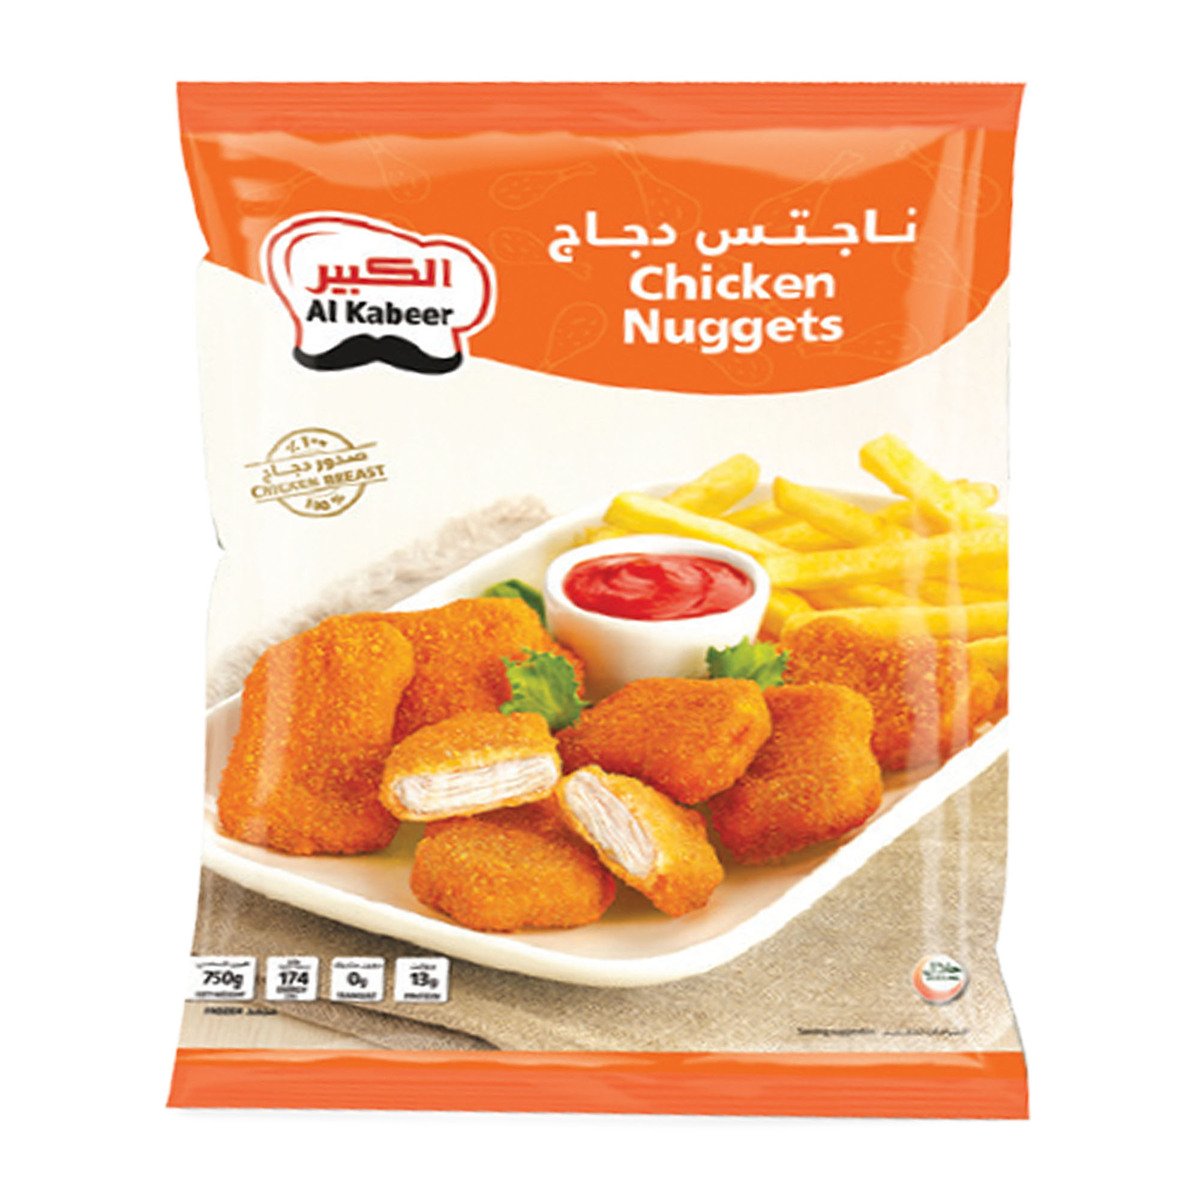 Al Kabeer Zing Chicken Strips Non Spicy 750 g + Chicken Nuggets 750 g